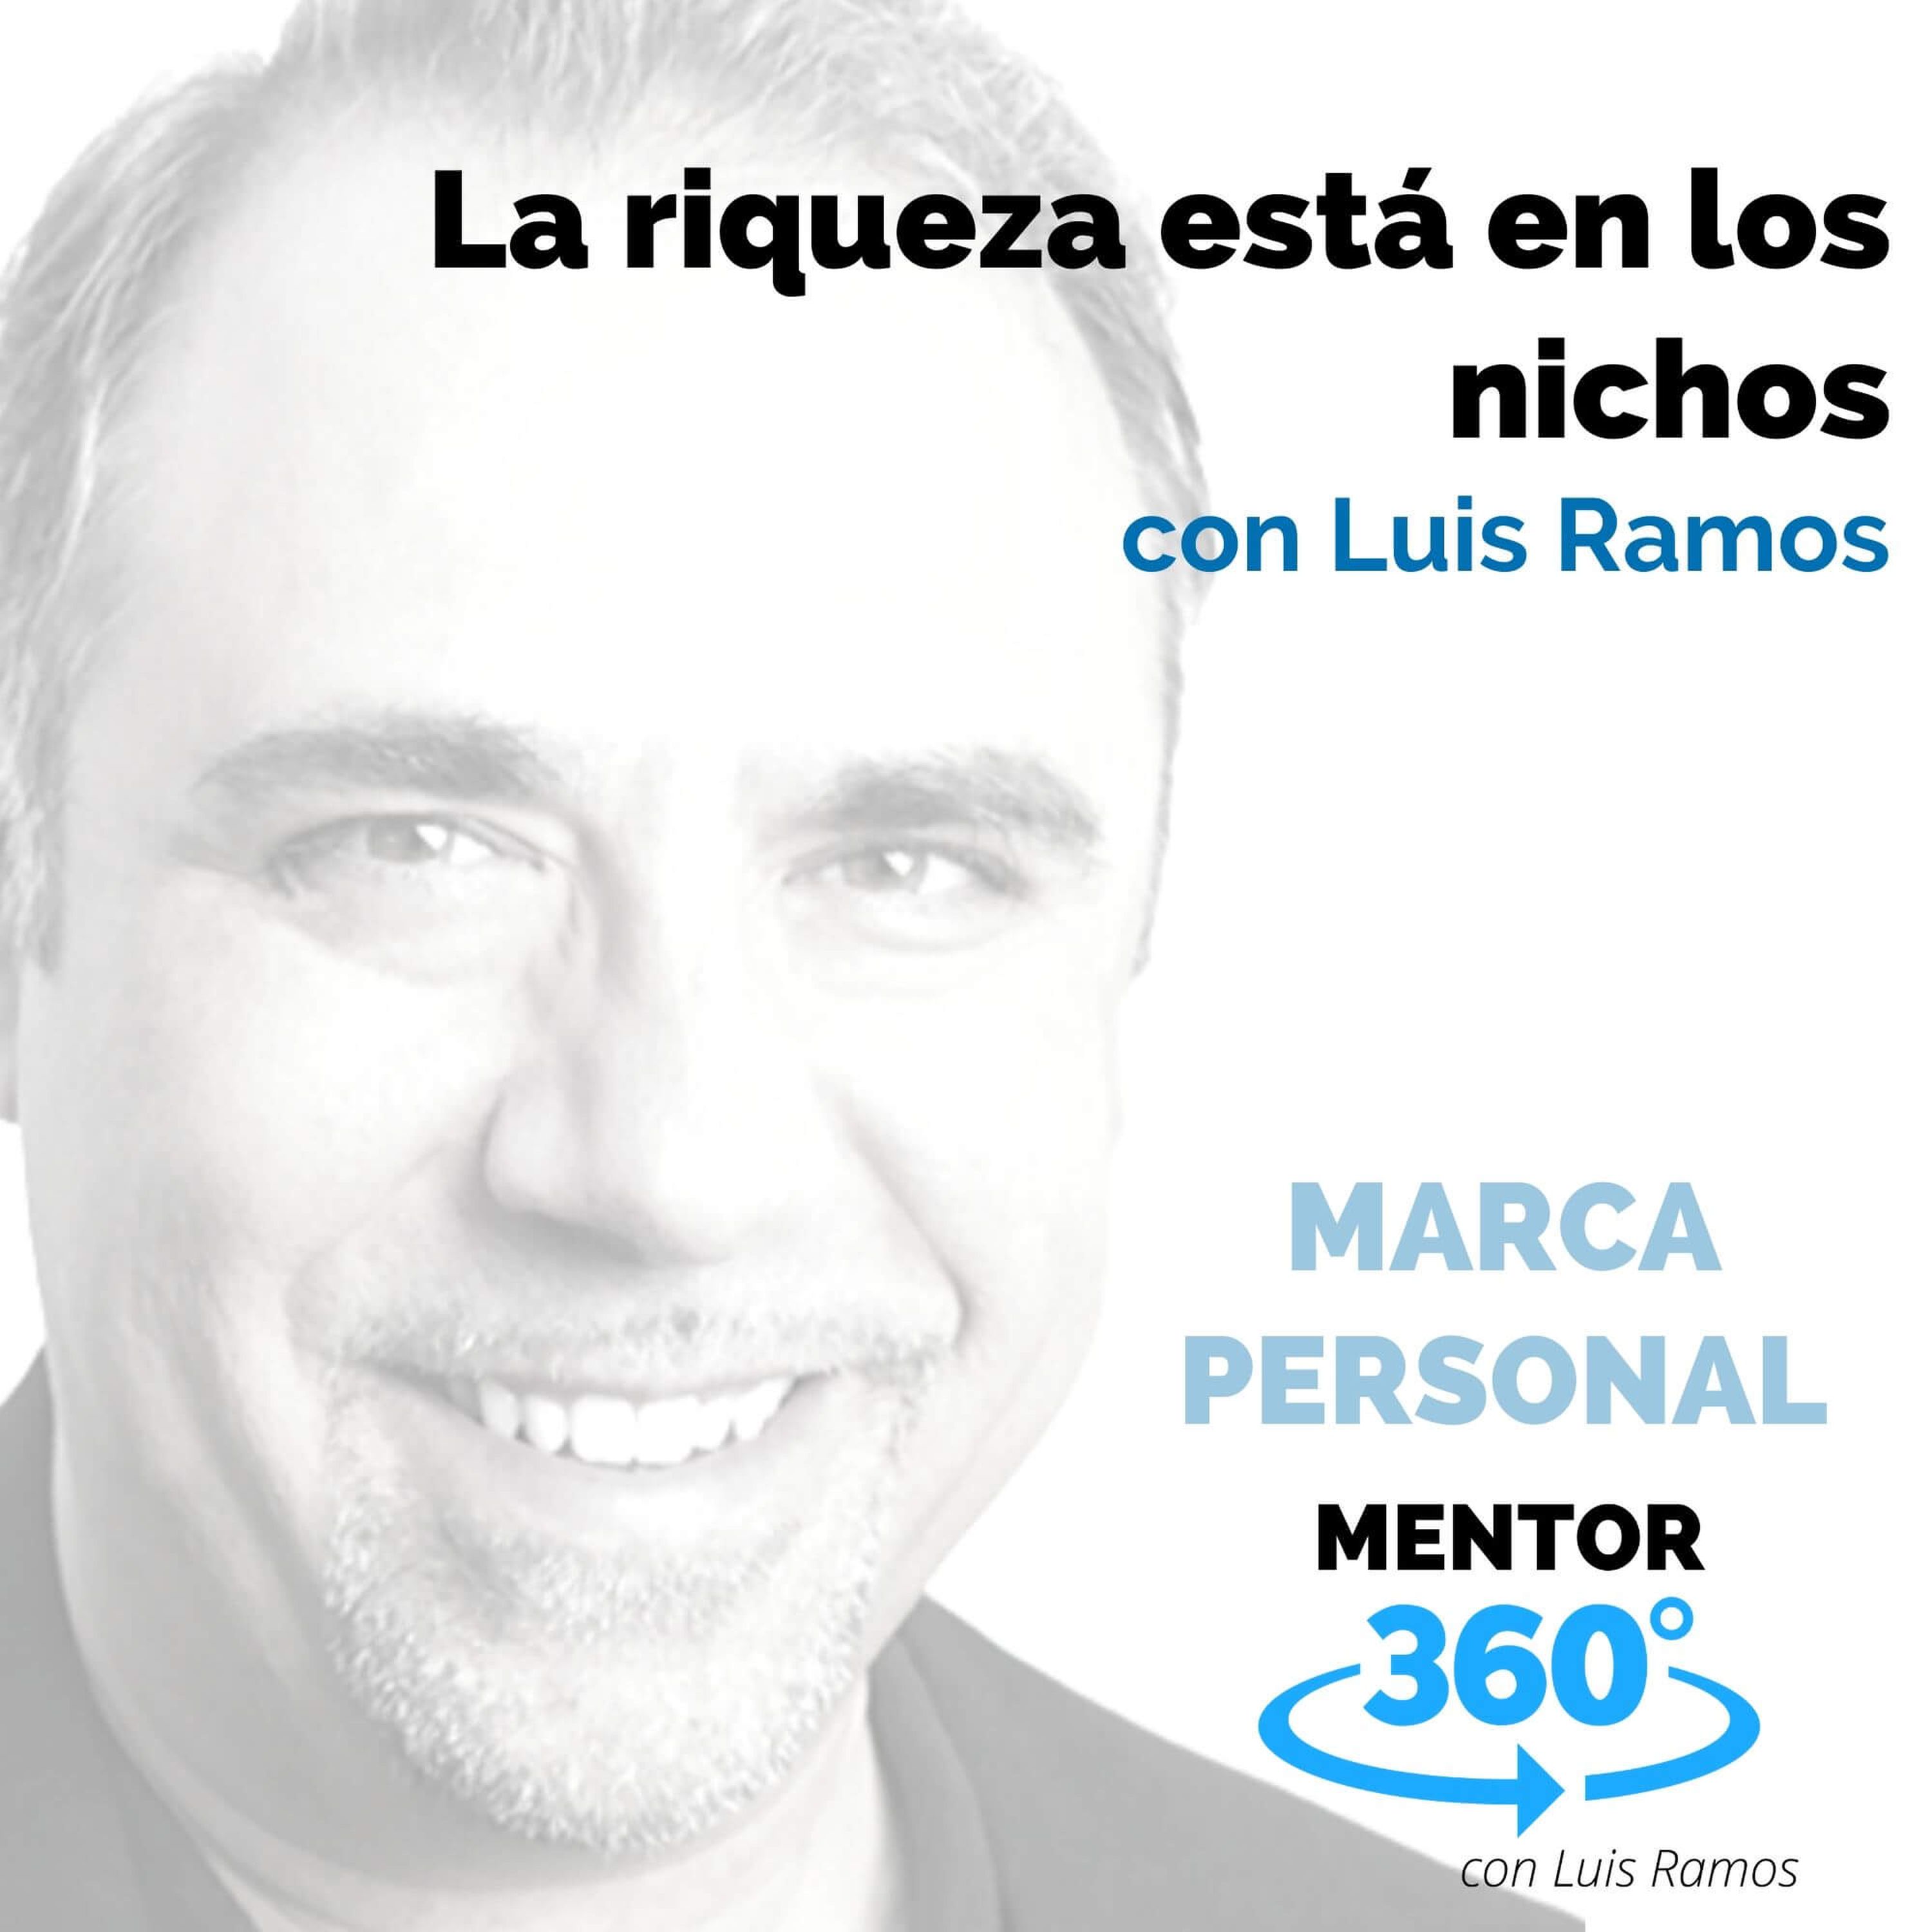 La riqueza está en los nichos, con Luis Ramos - MARCA PERSONAL